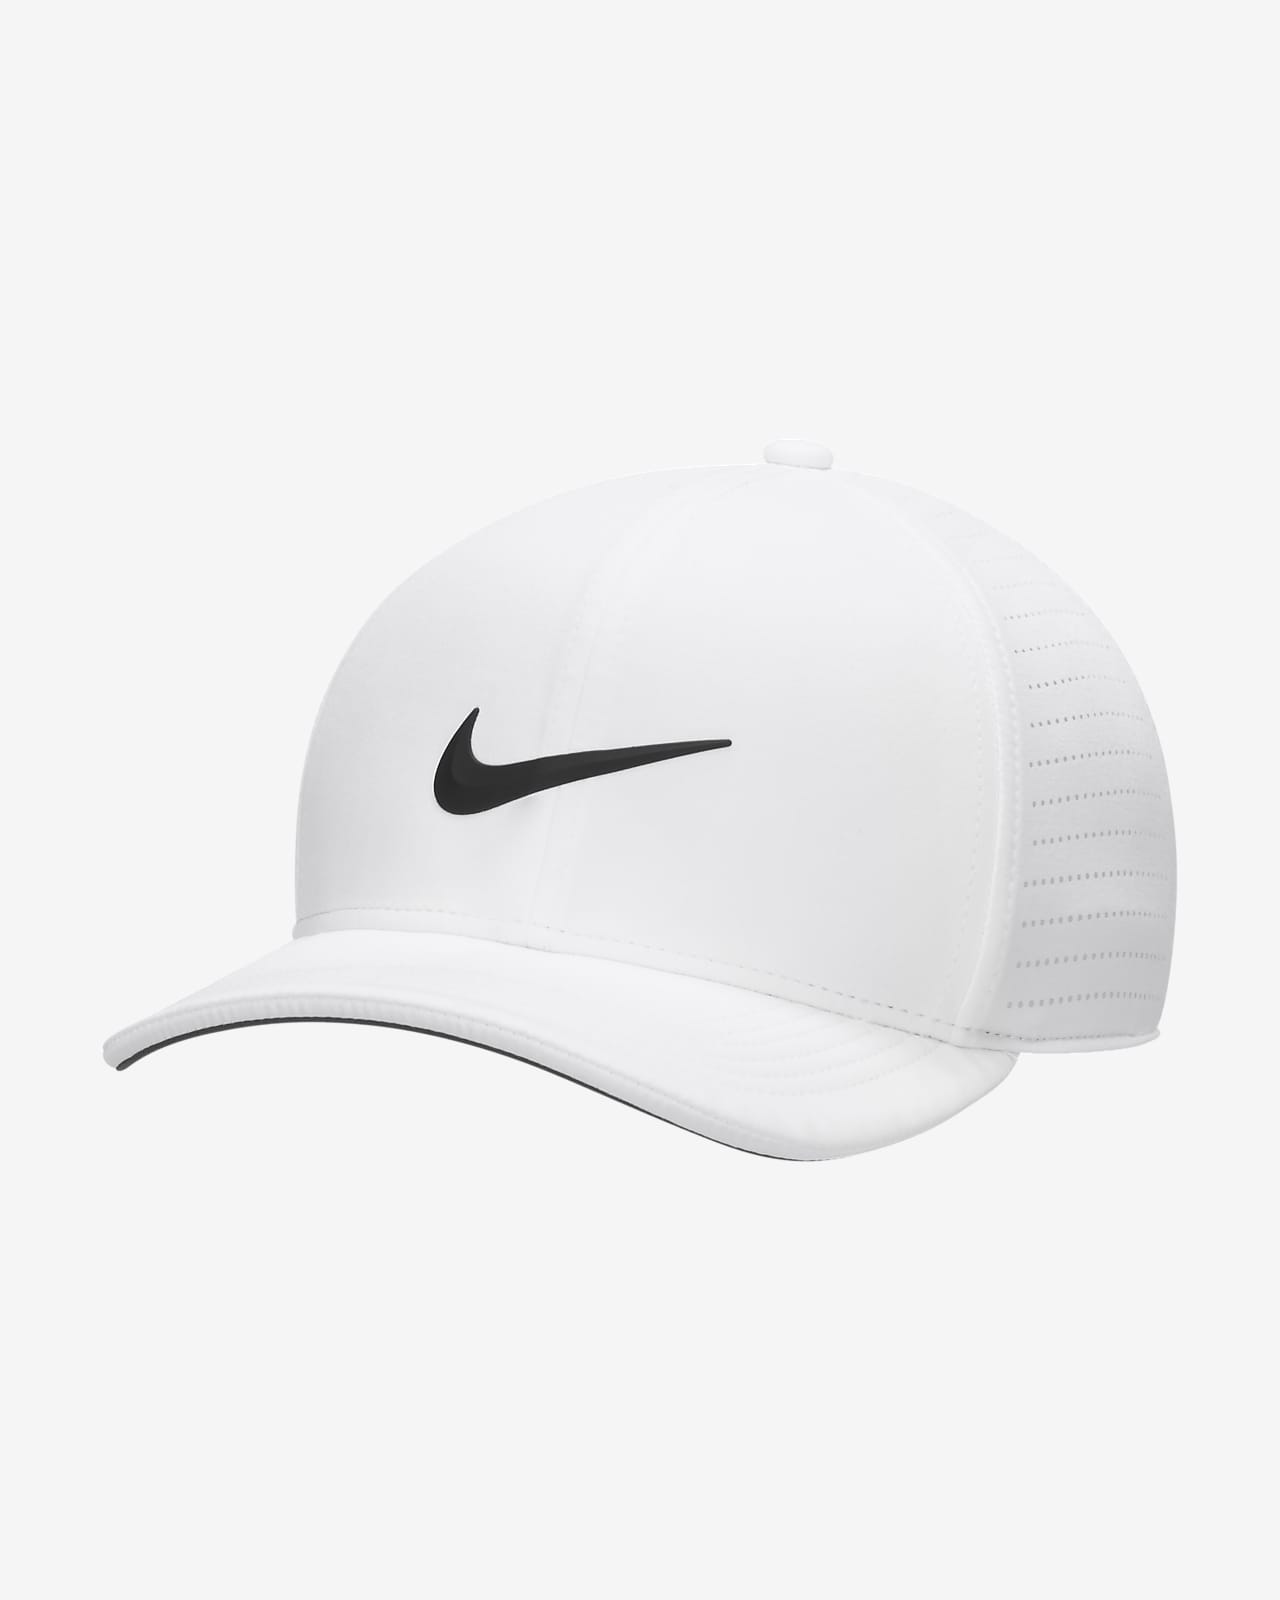 Nike Dri-FIT ADV Classic99 perforierte Golf-Cap